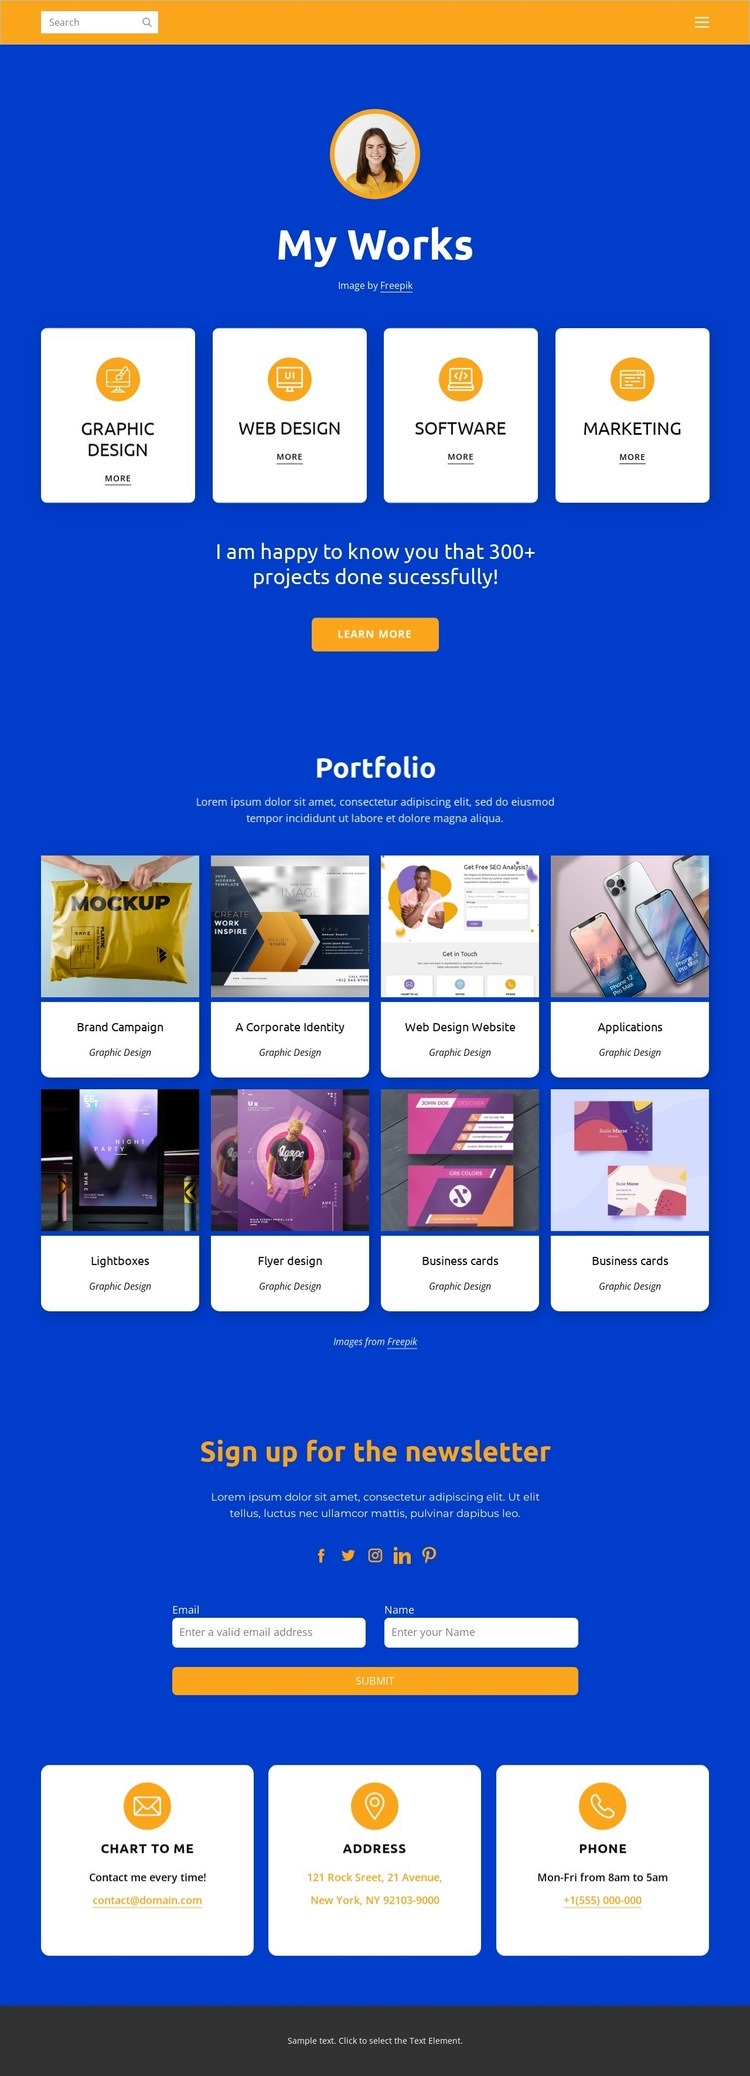 Web design and graphic design Homepage Design